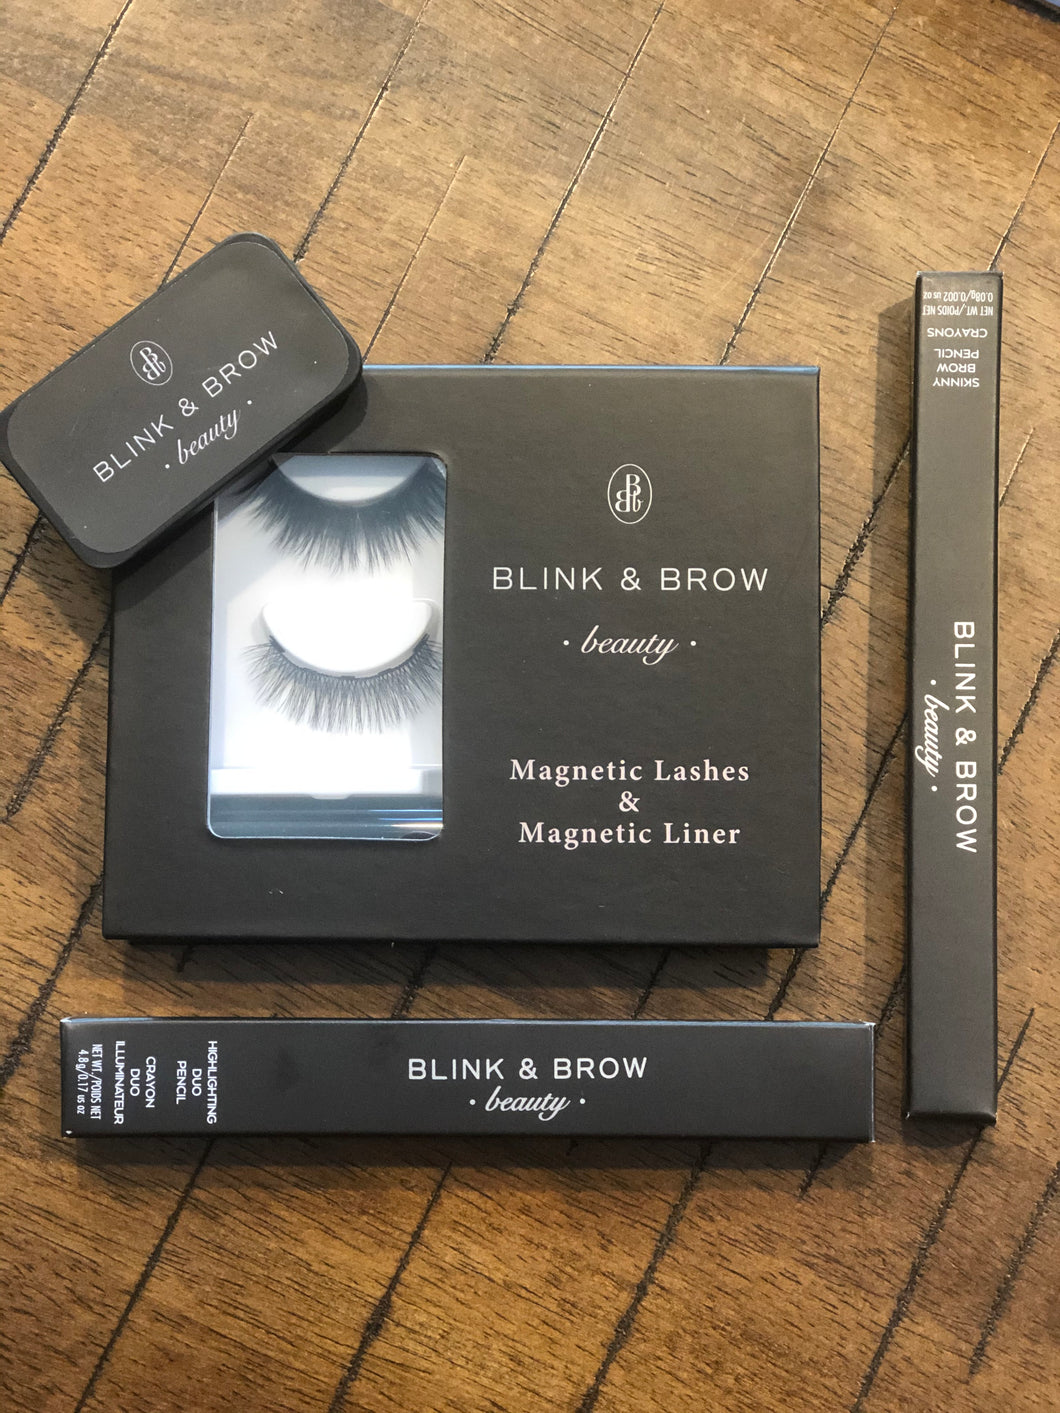 'Blink & Brow' Full Beauty Set